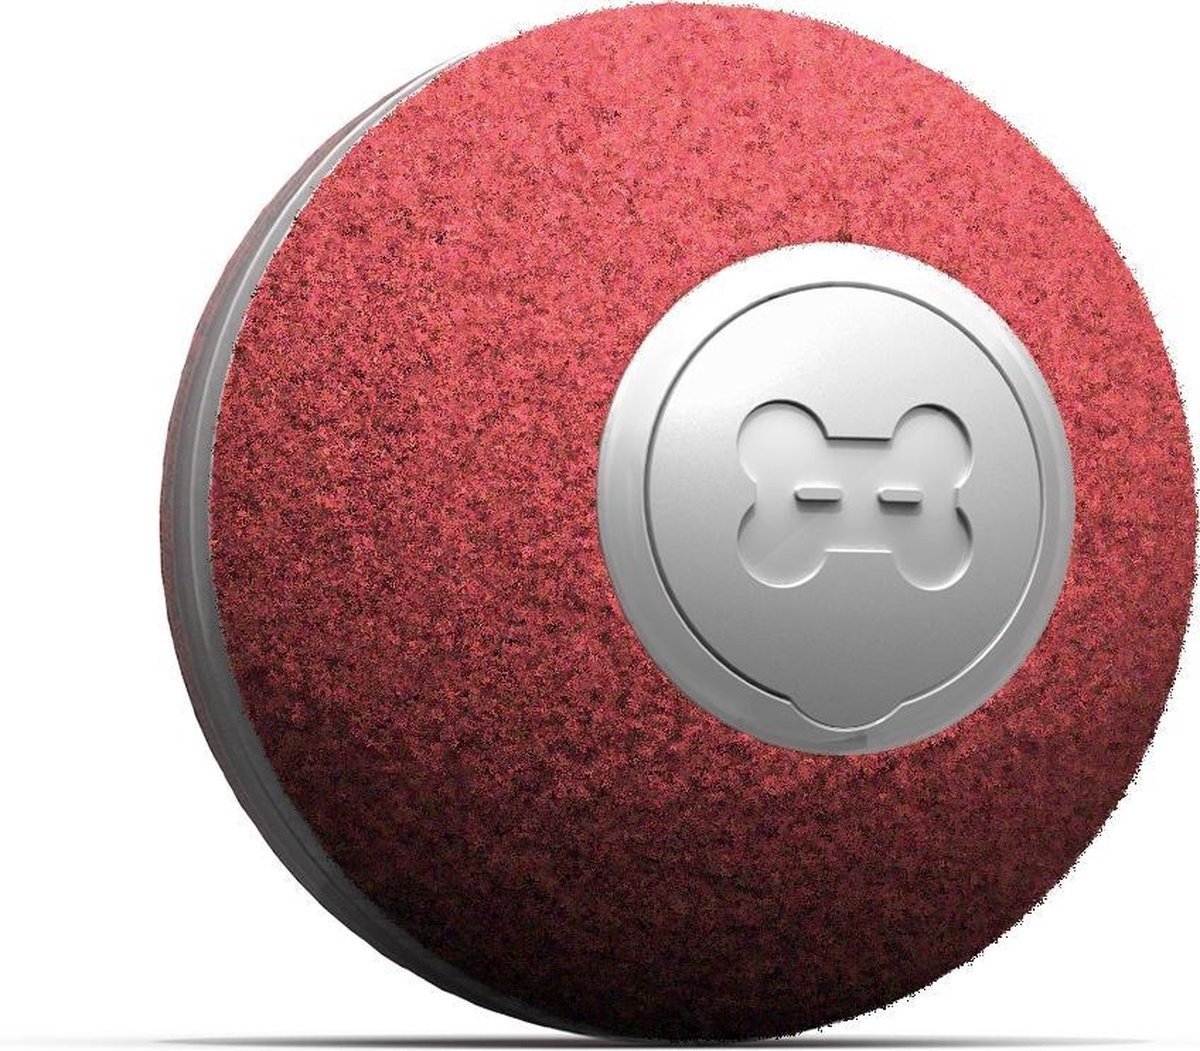 Intelligente Spiel günstig Kaufen-Cheerble mini ball 2.0 - Intelligenter interaktiver selbstrollender Ball für Katzen - 3 Spielmodi - Katzenspielzeug - USB aufladbar - Rot. Cheerble mini ball 2.0 - Intelligenter interaktiver selbstrollender Ball für Katzen - 3 Spielmodi - Katzen